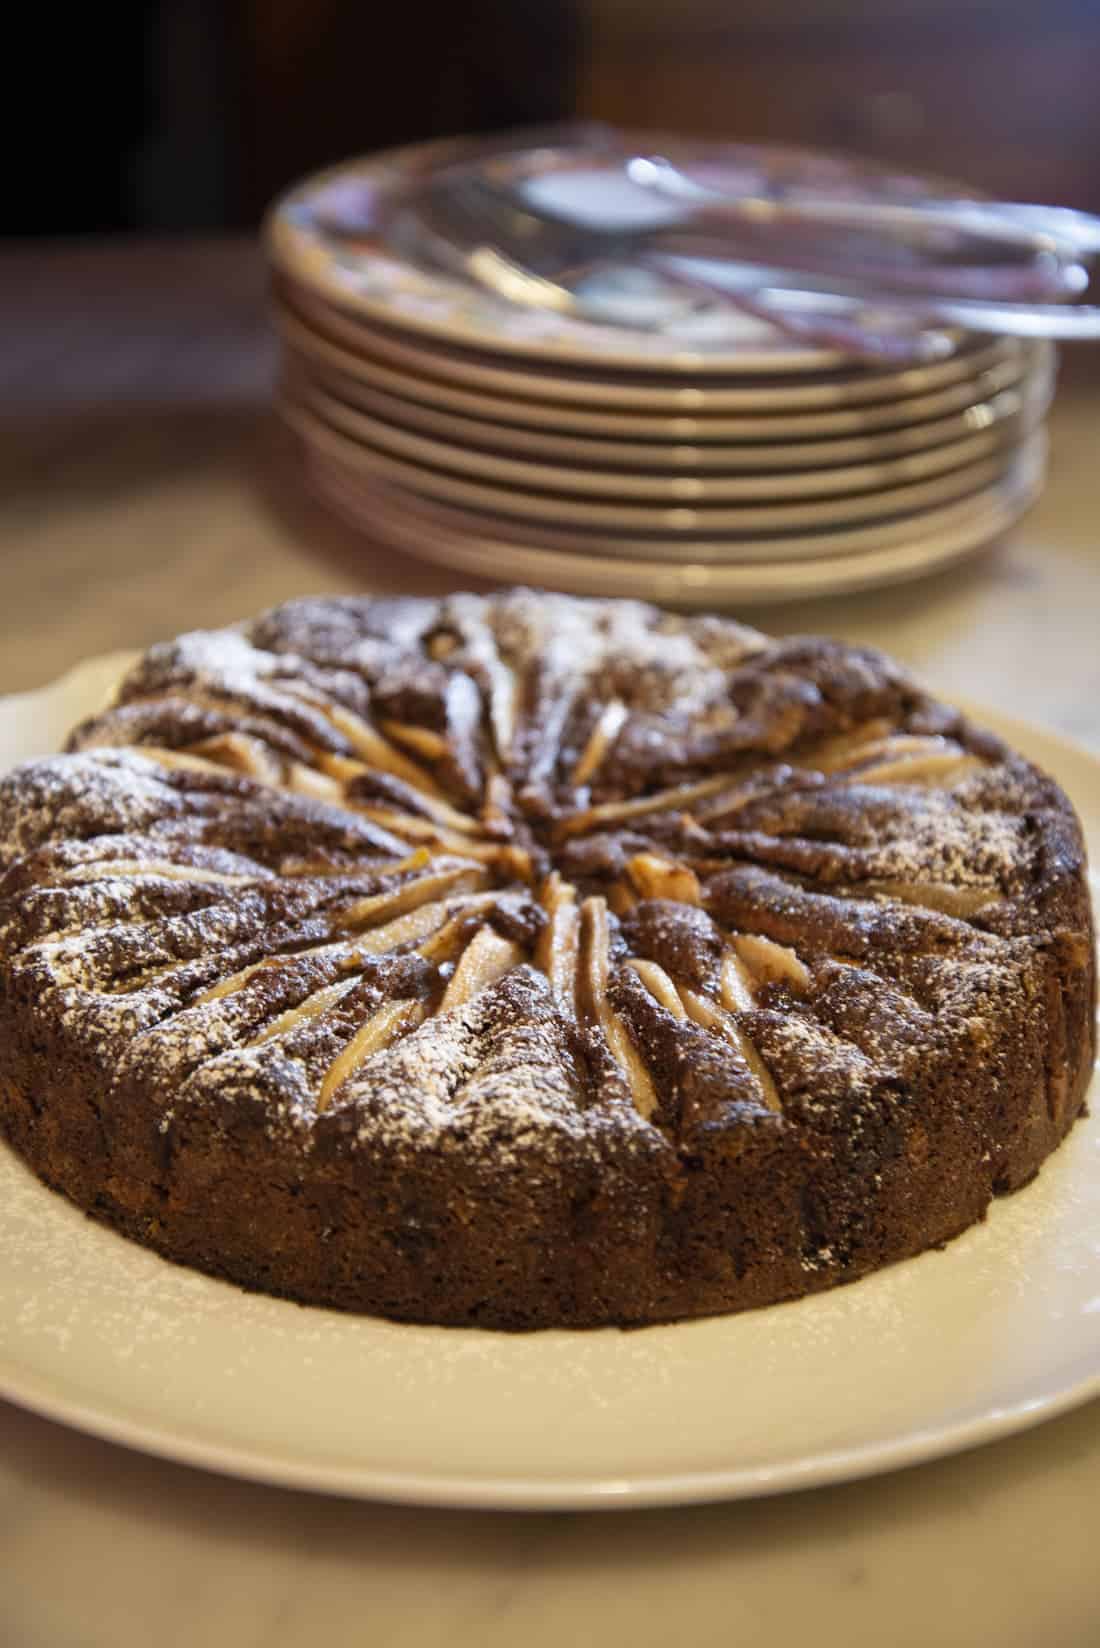 tavolo con sopra piatto bianco con torta al cioccolato, pere e zucchero. Piatti impilati sullo sfondo